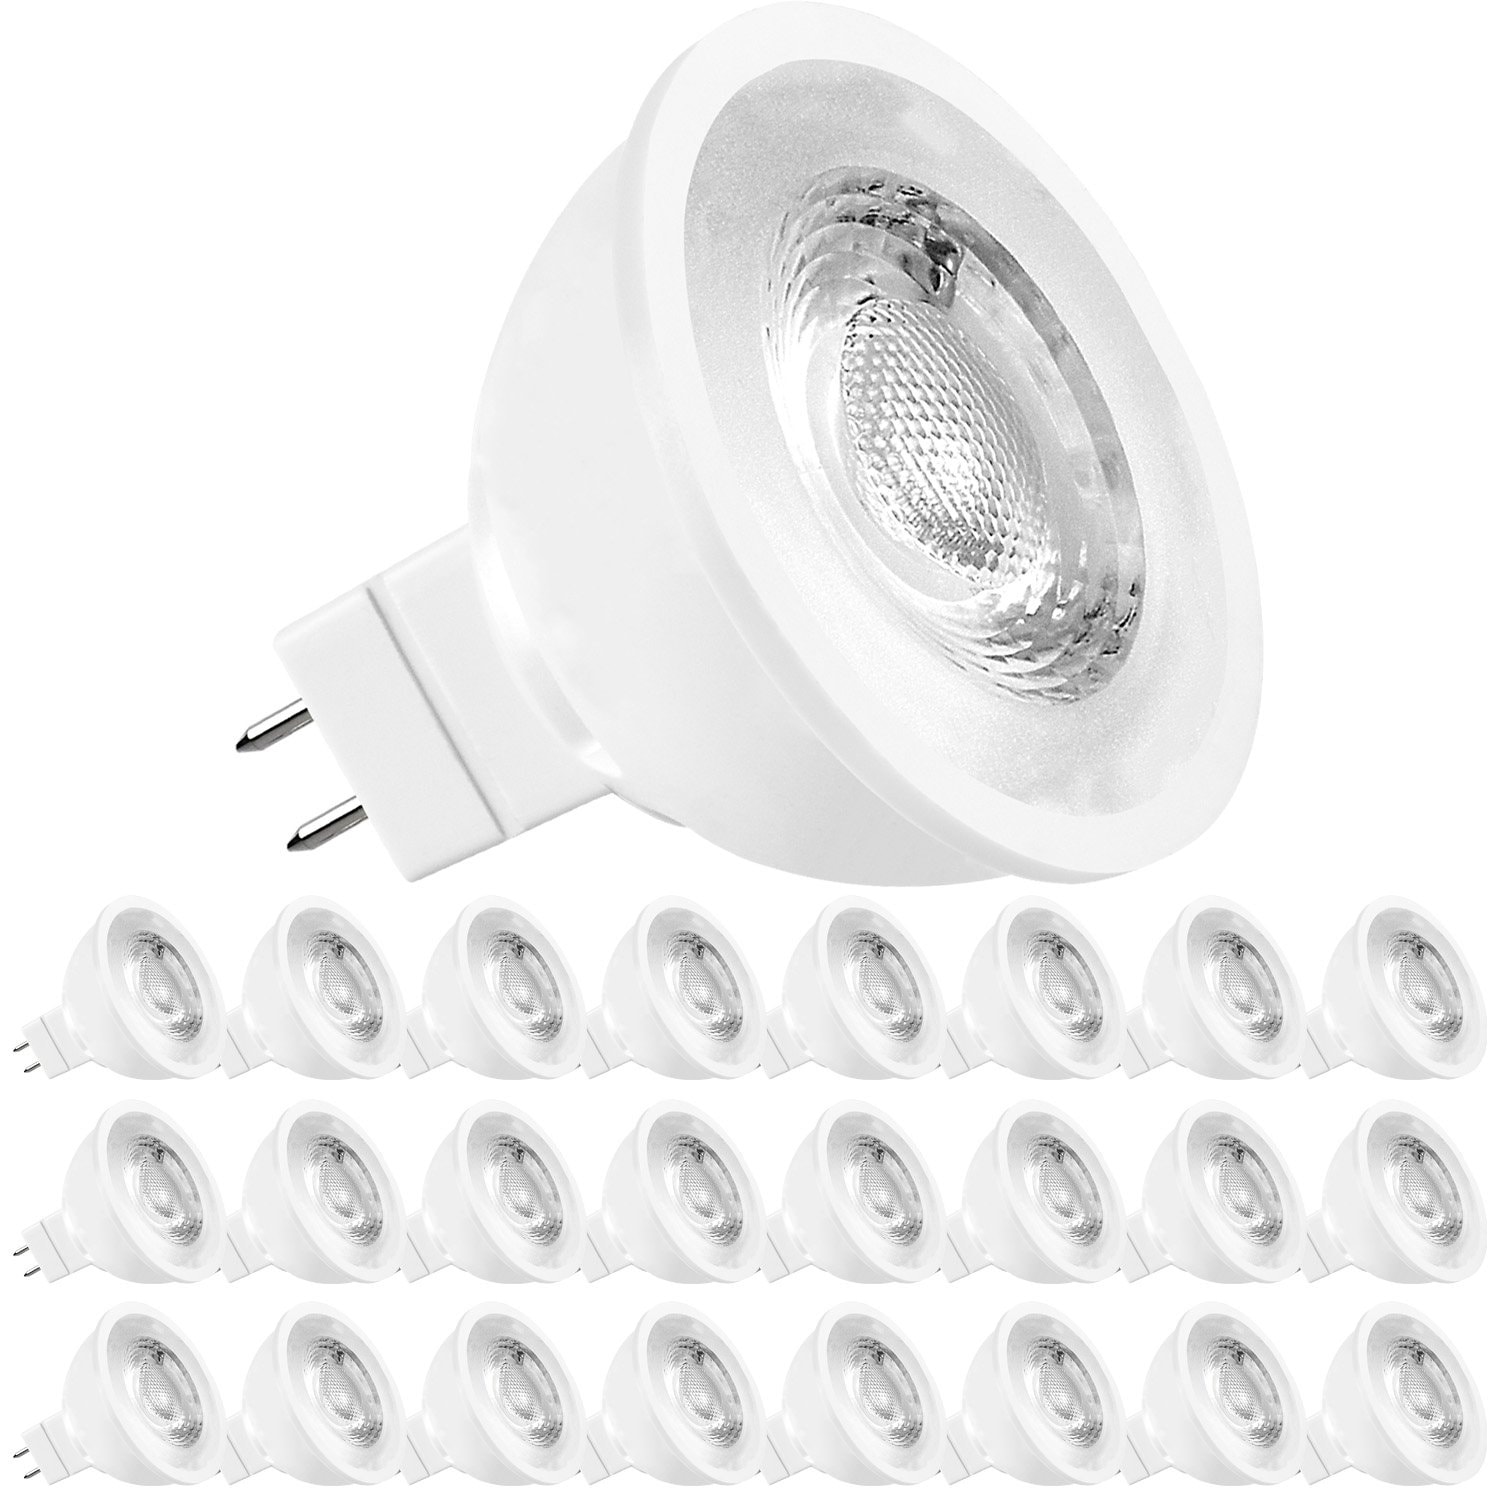 Indsigt kande værdi Luxrite MR16 LED Bulb 50W Equivalent, 12V, Dimmable, 500 Lumens, GU5.3 LED  Bulb 6.5W, Enclosed Fixture Rated (24 Pack) - On Sale - Overstock - 31860222